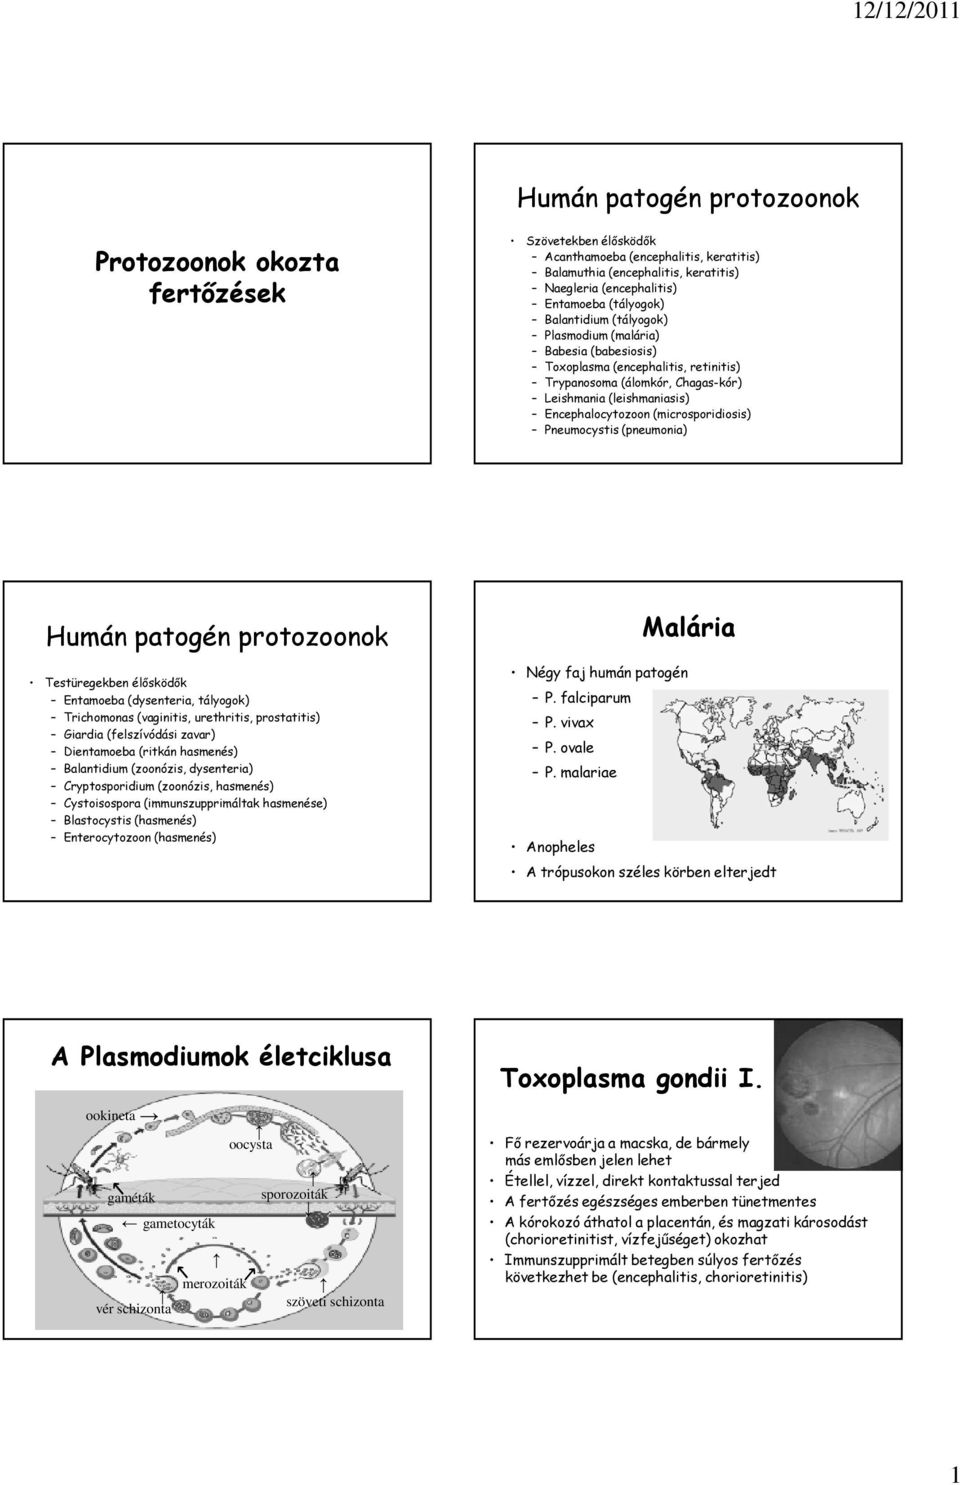 Egészségügyi jegyzetek - 1 - Mikrobiológia - Parazitológia